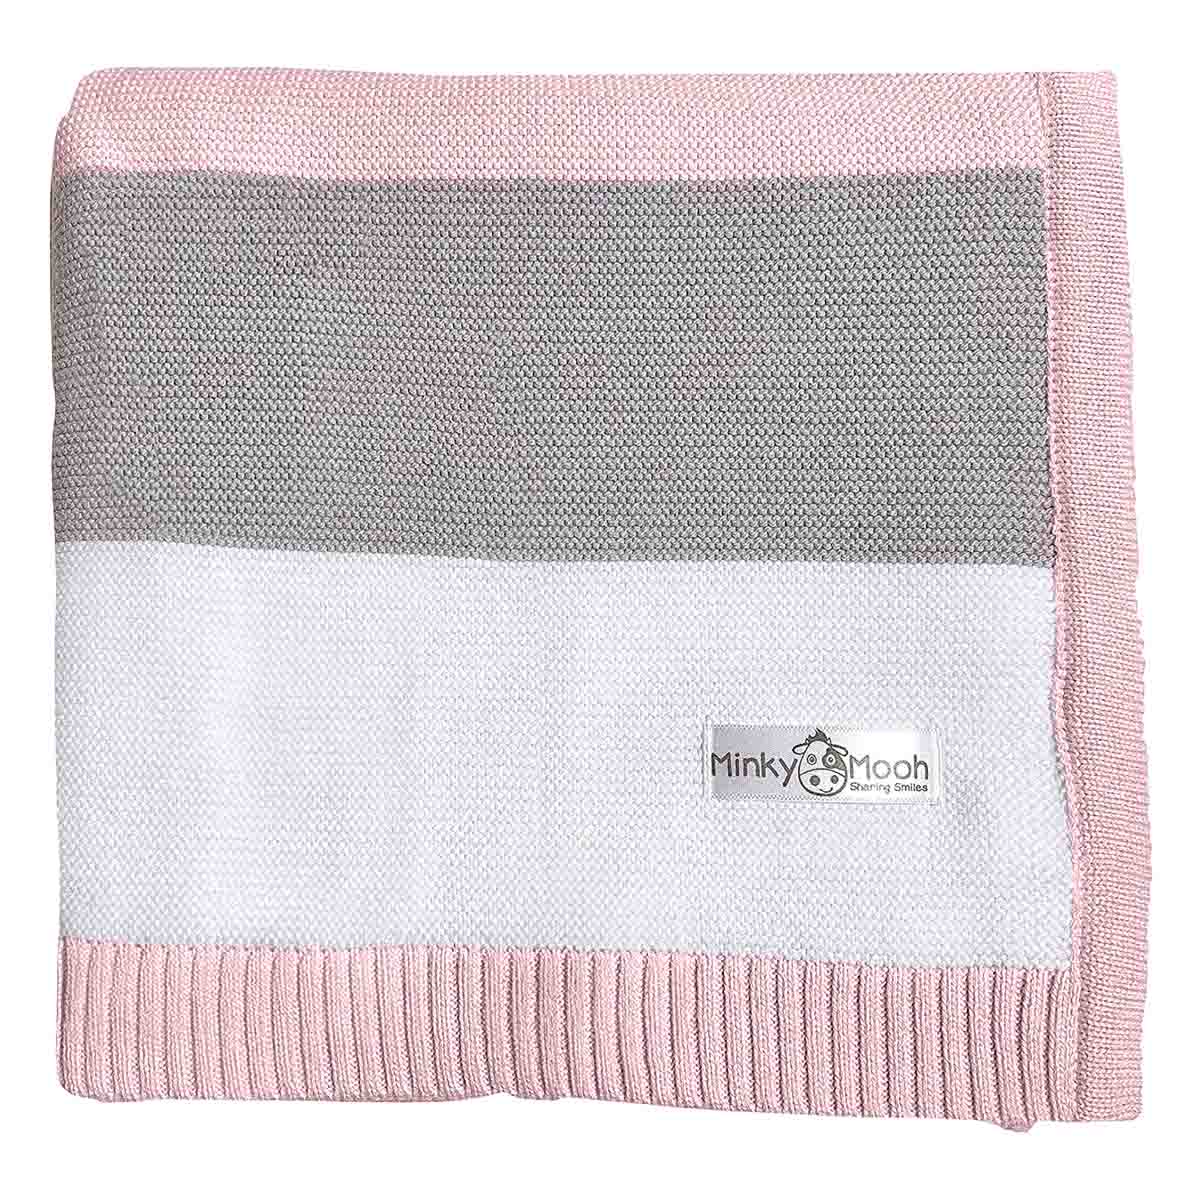 Flach liegende, rosa-grau-weiße gestreifte Bio-Baumwolldecke mit Minky Mooh Markenetikett auf weißem Hintergrund.